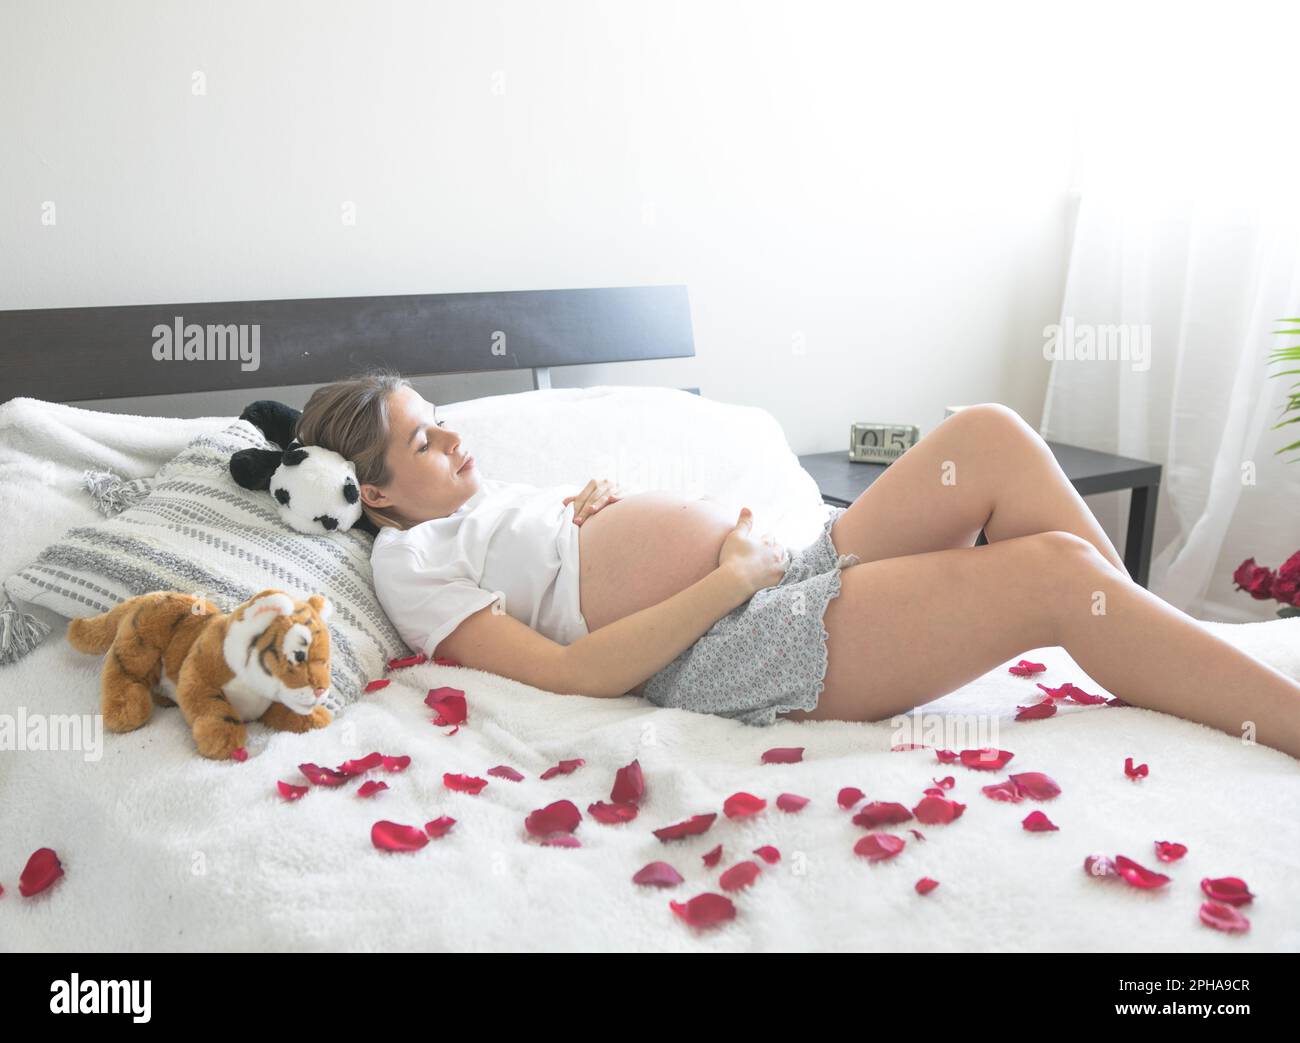 Schwangere im Liegestuhl. Das Konzept von Schwangerschaft, Mutterschaft und  Schwangerenbetreuung. Mom mit einem neuen Leben Stockfotografie - Alamy